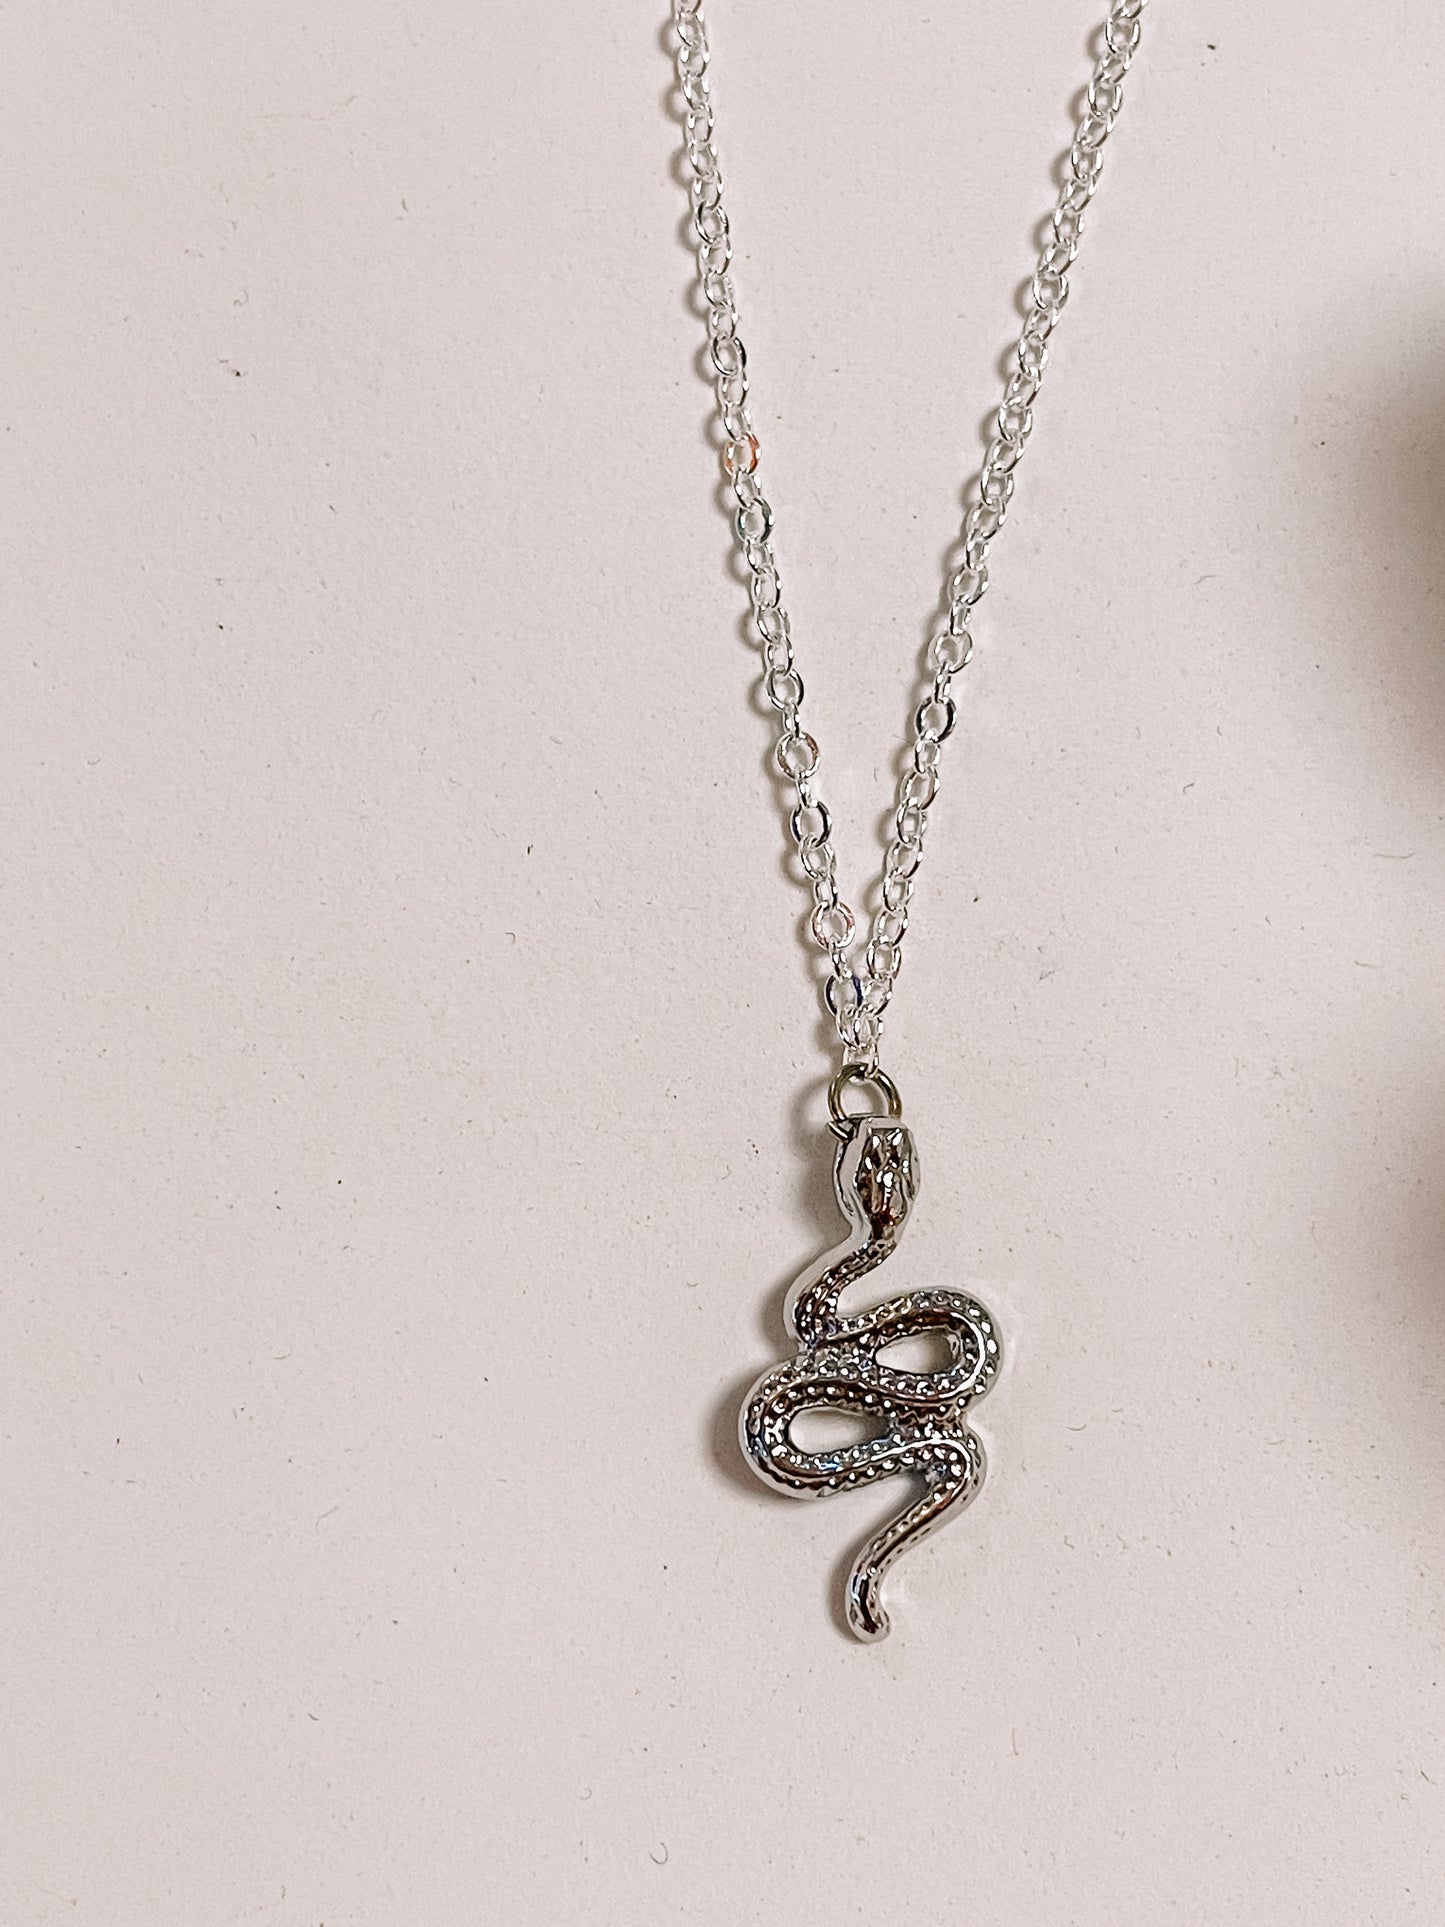 Snake pendant necklace